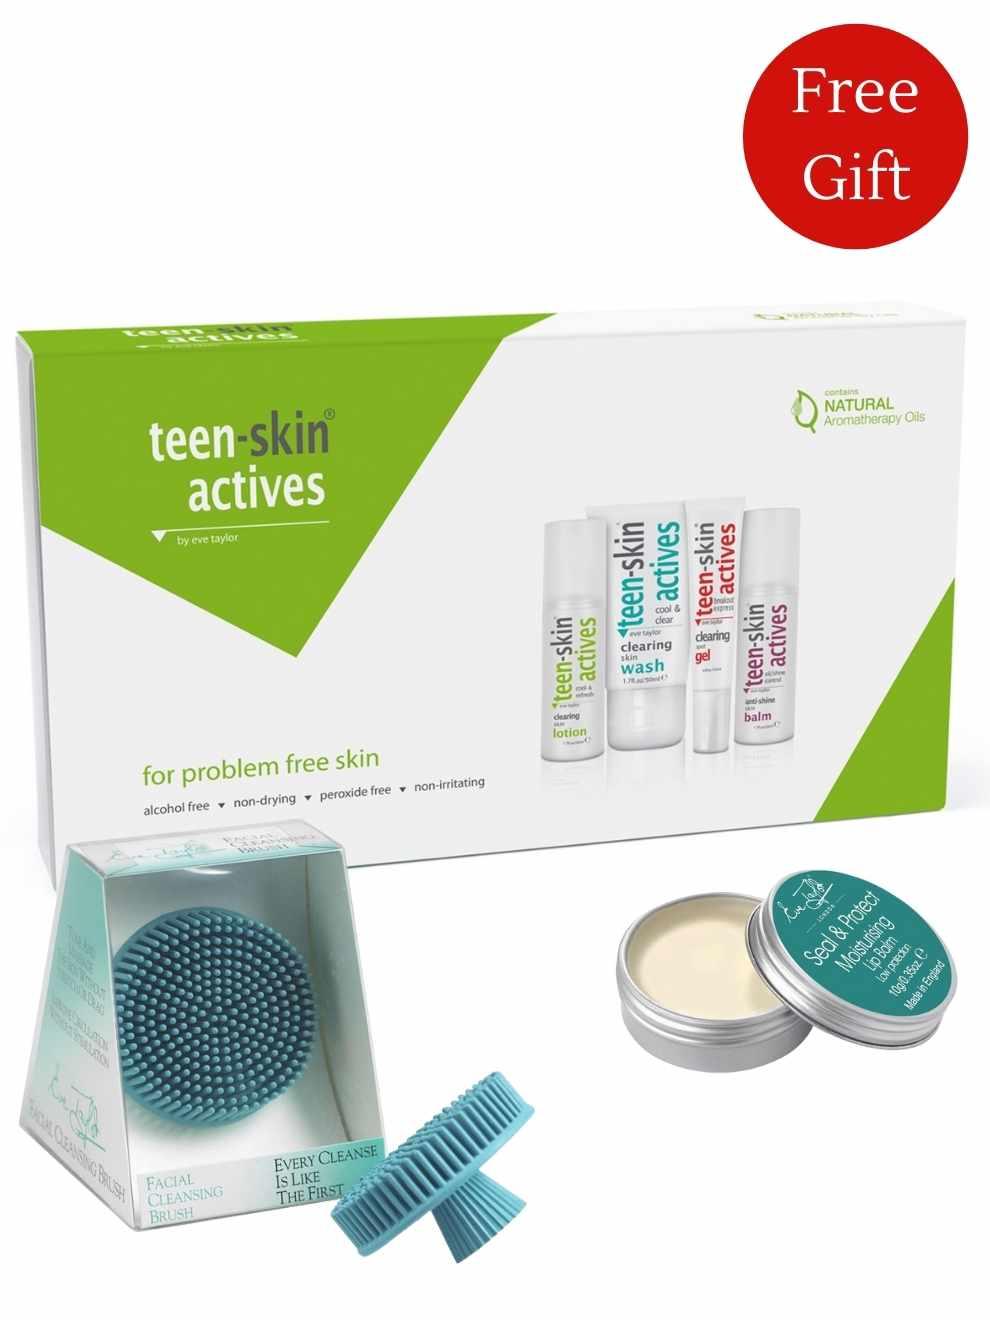 Eve Taylor Teen-Skin Actives Skin Bundle Gift Set